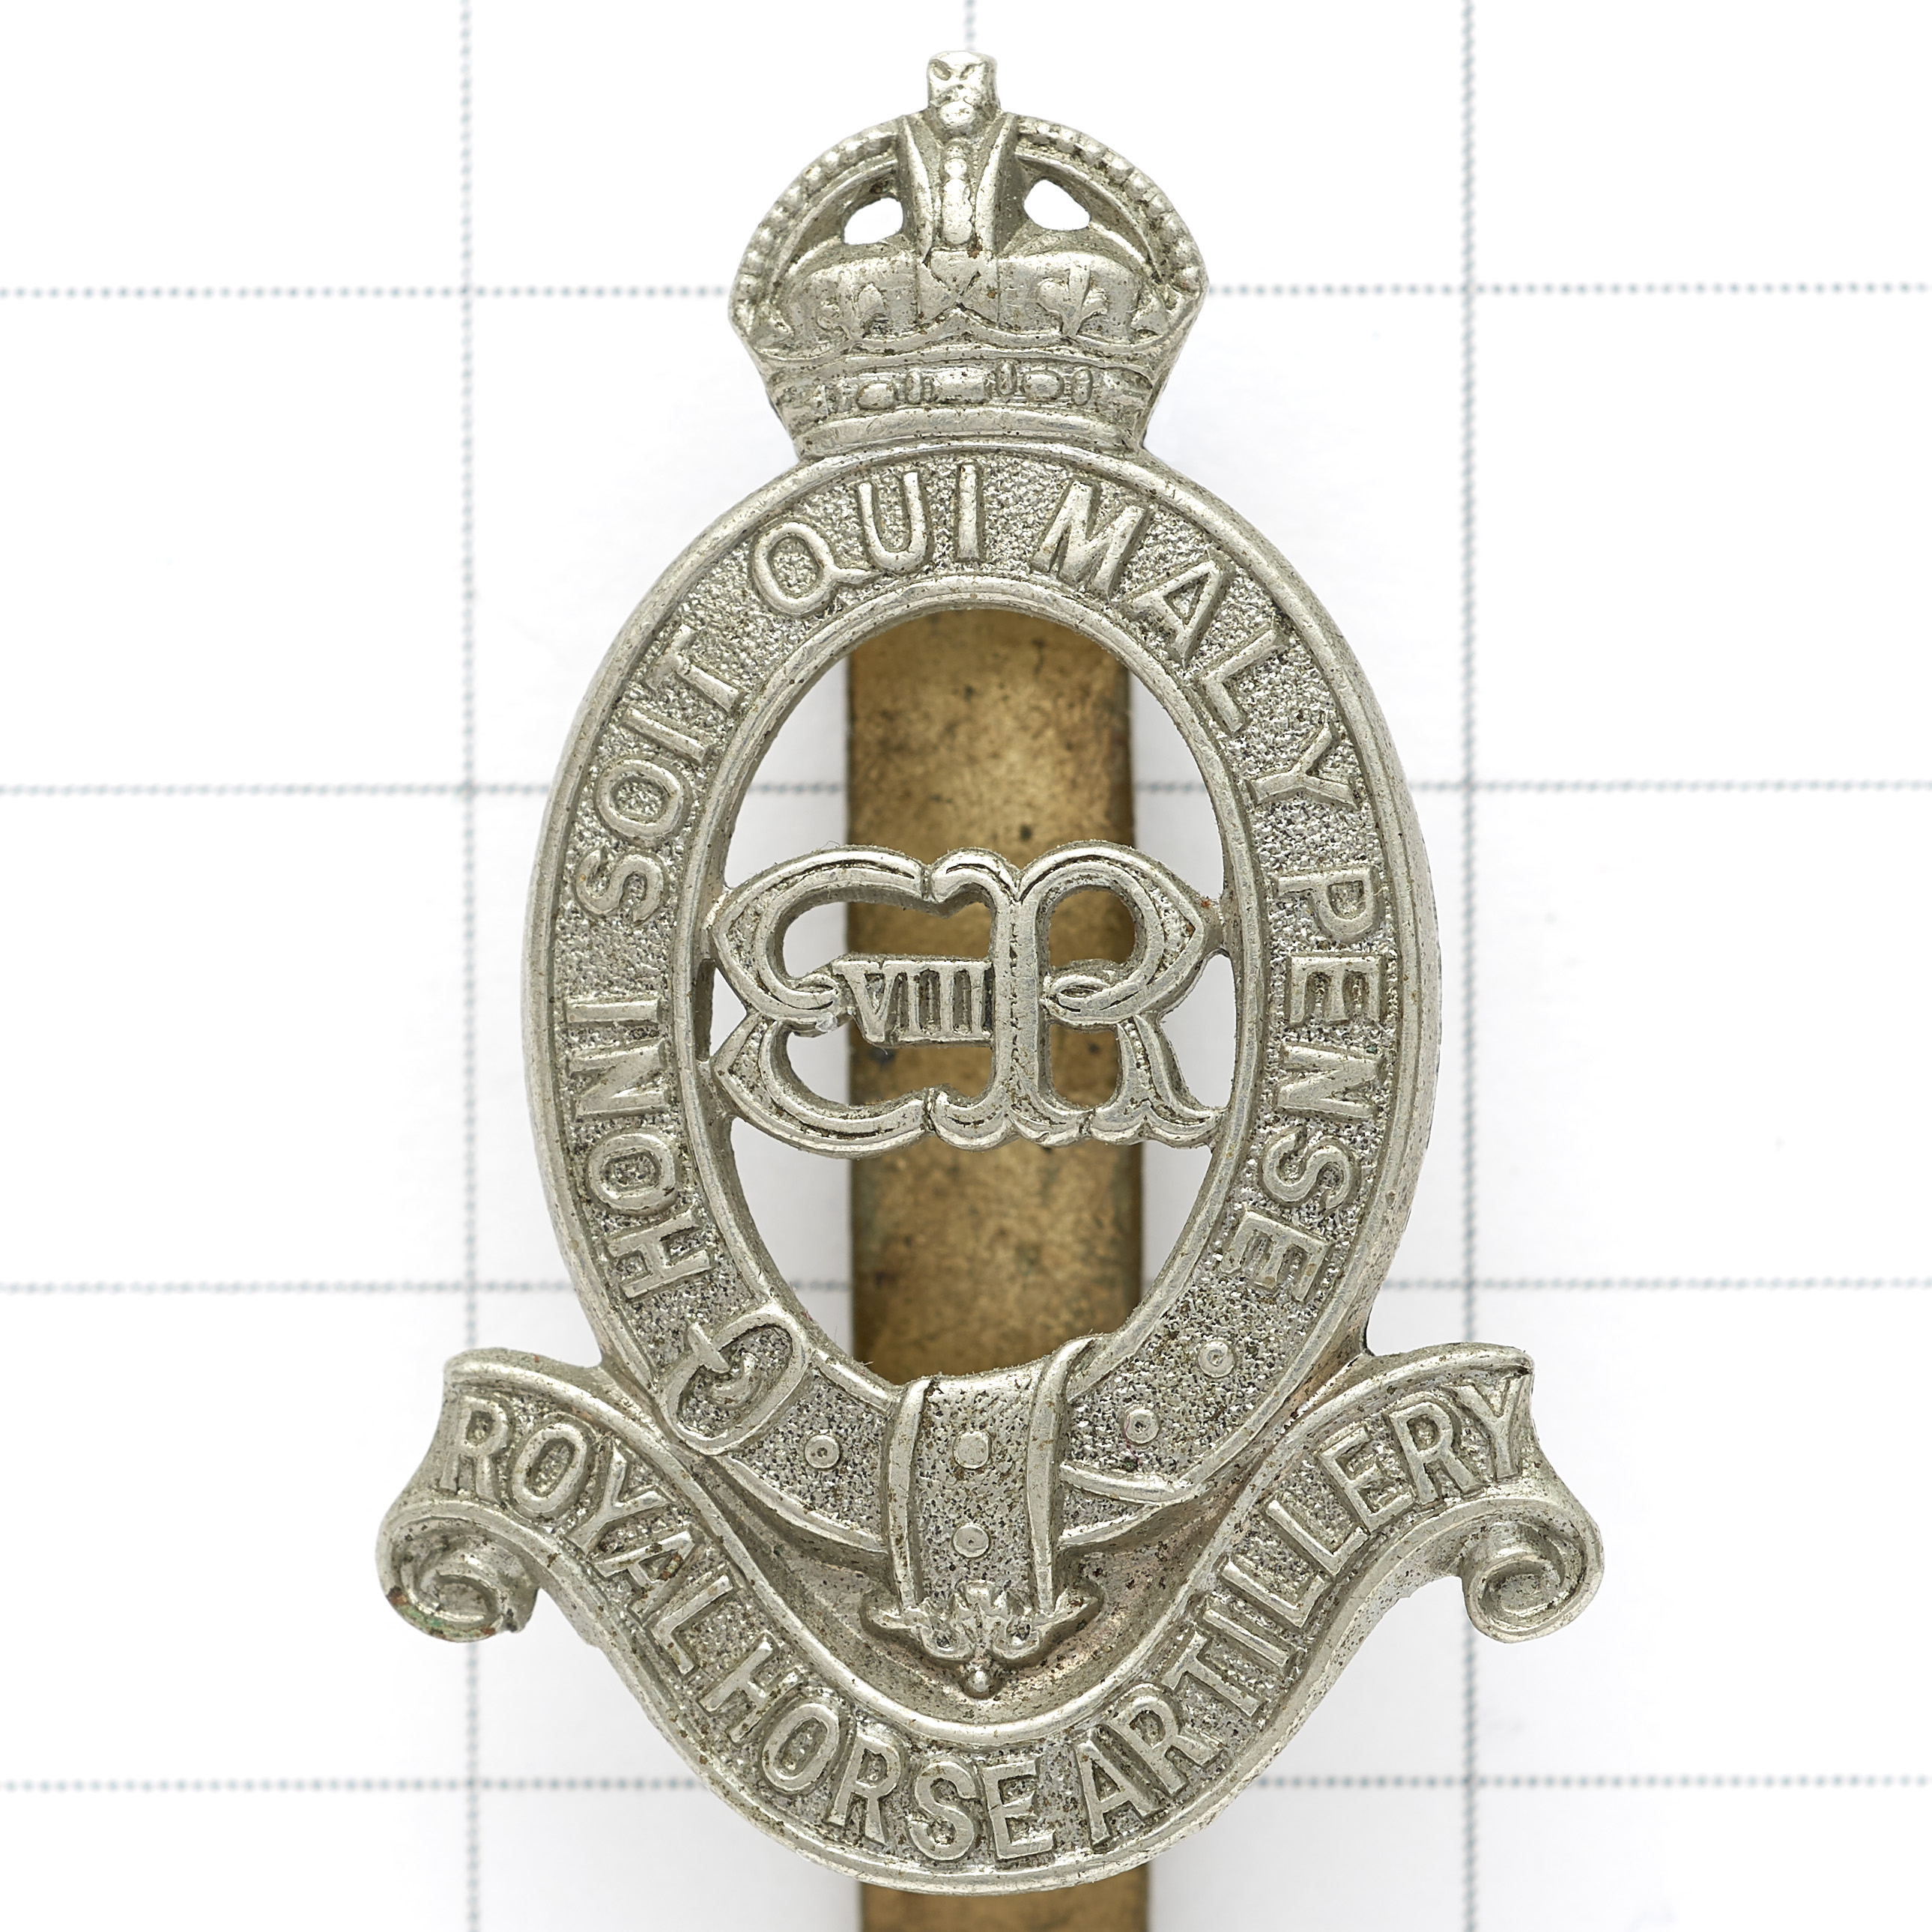 Royal Horse Artillery scarce Edward VIII cap badge circa 1936.